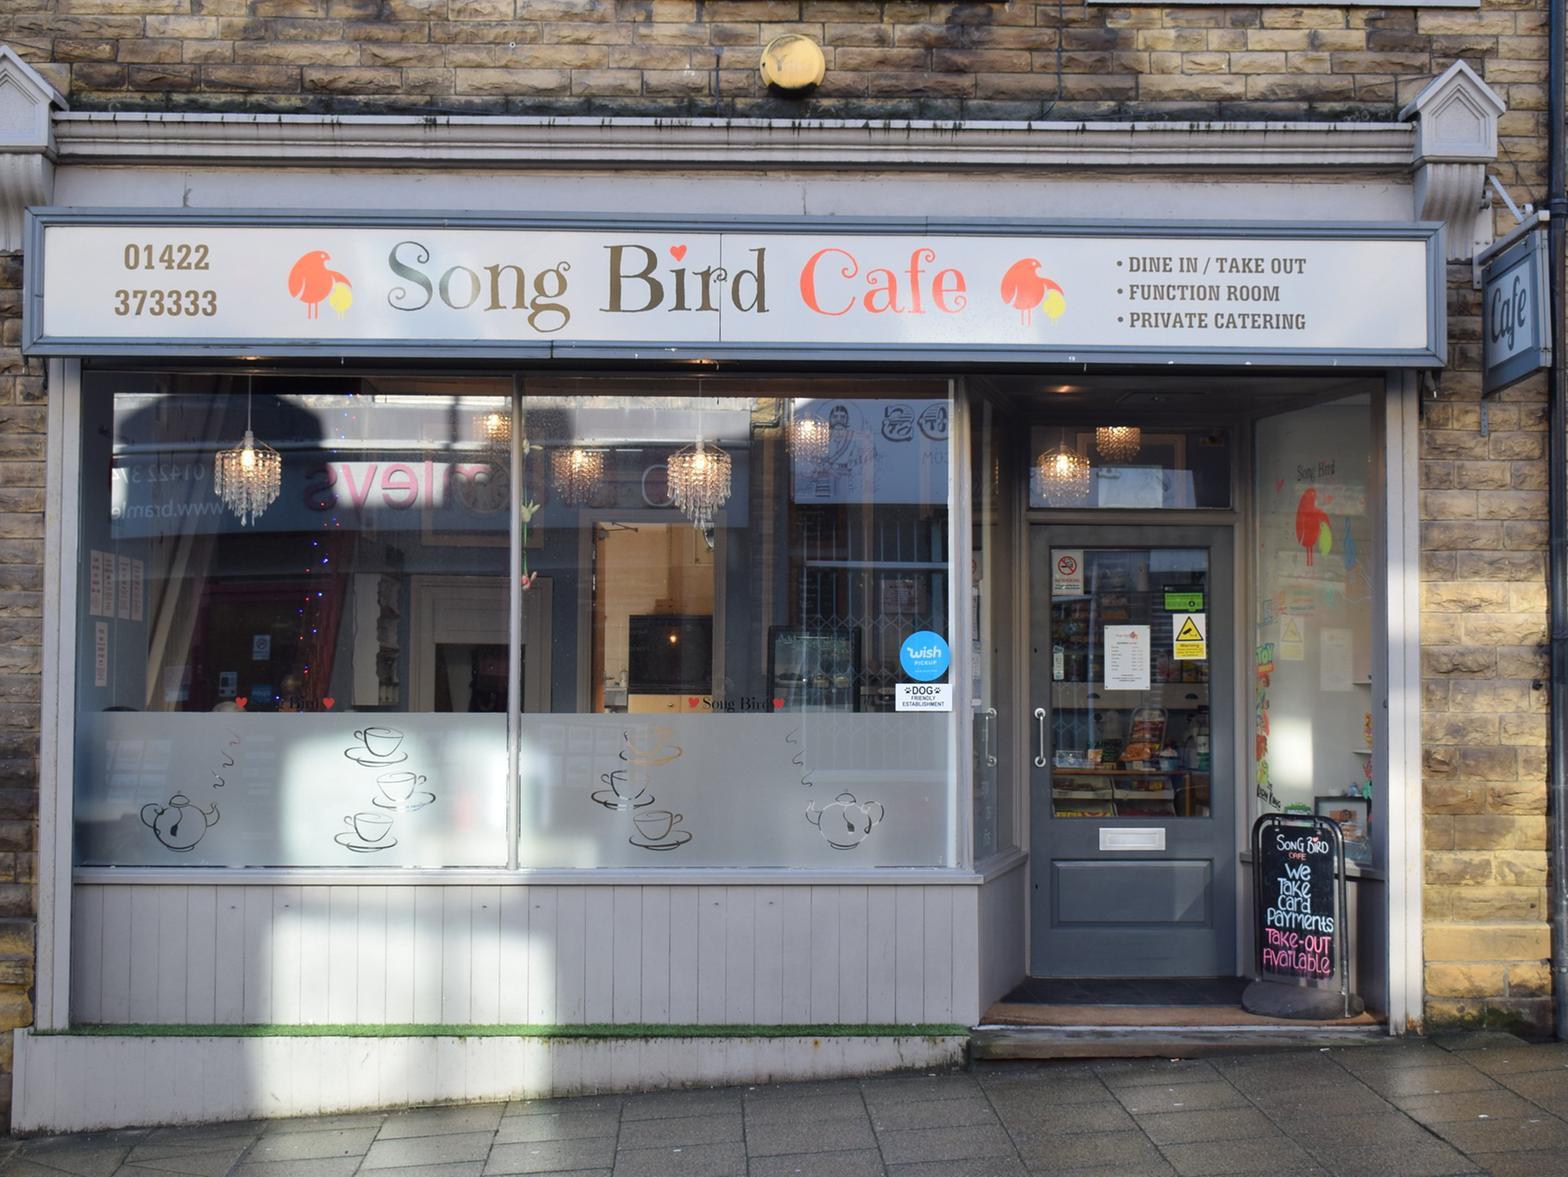 007. Song Bird Cafe, 1 Victoria Road, Elland